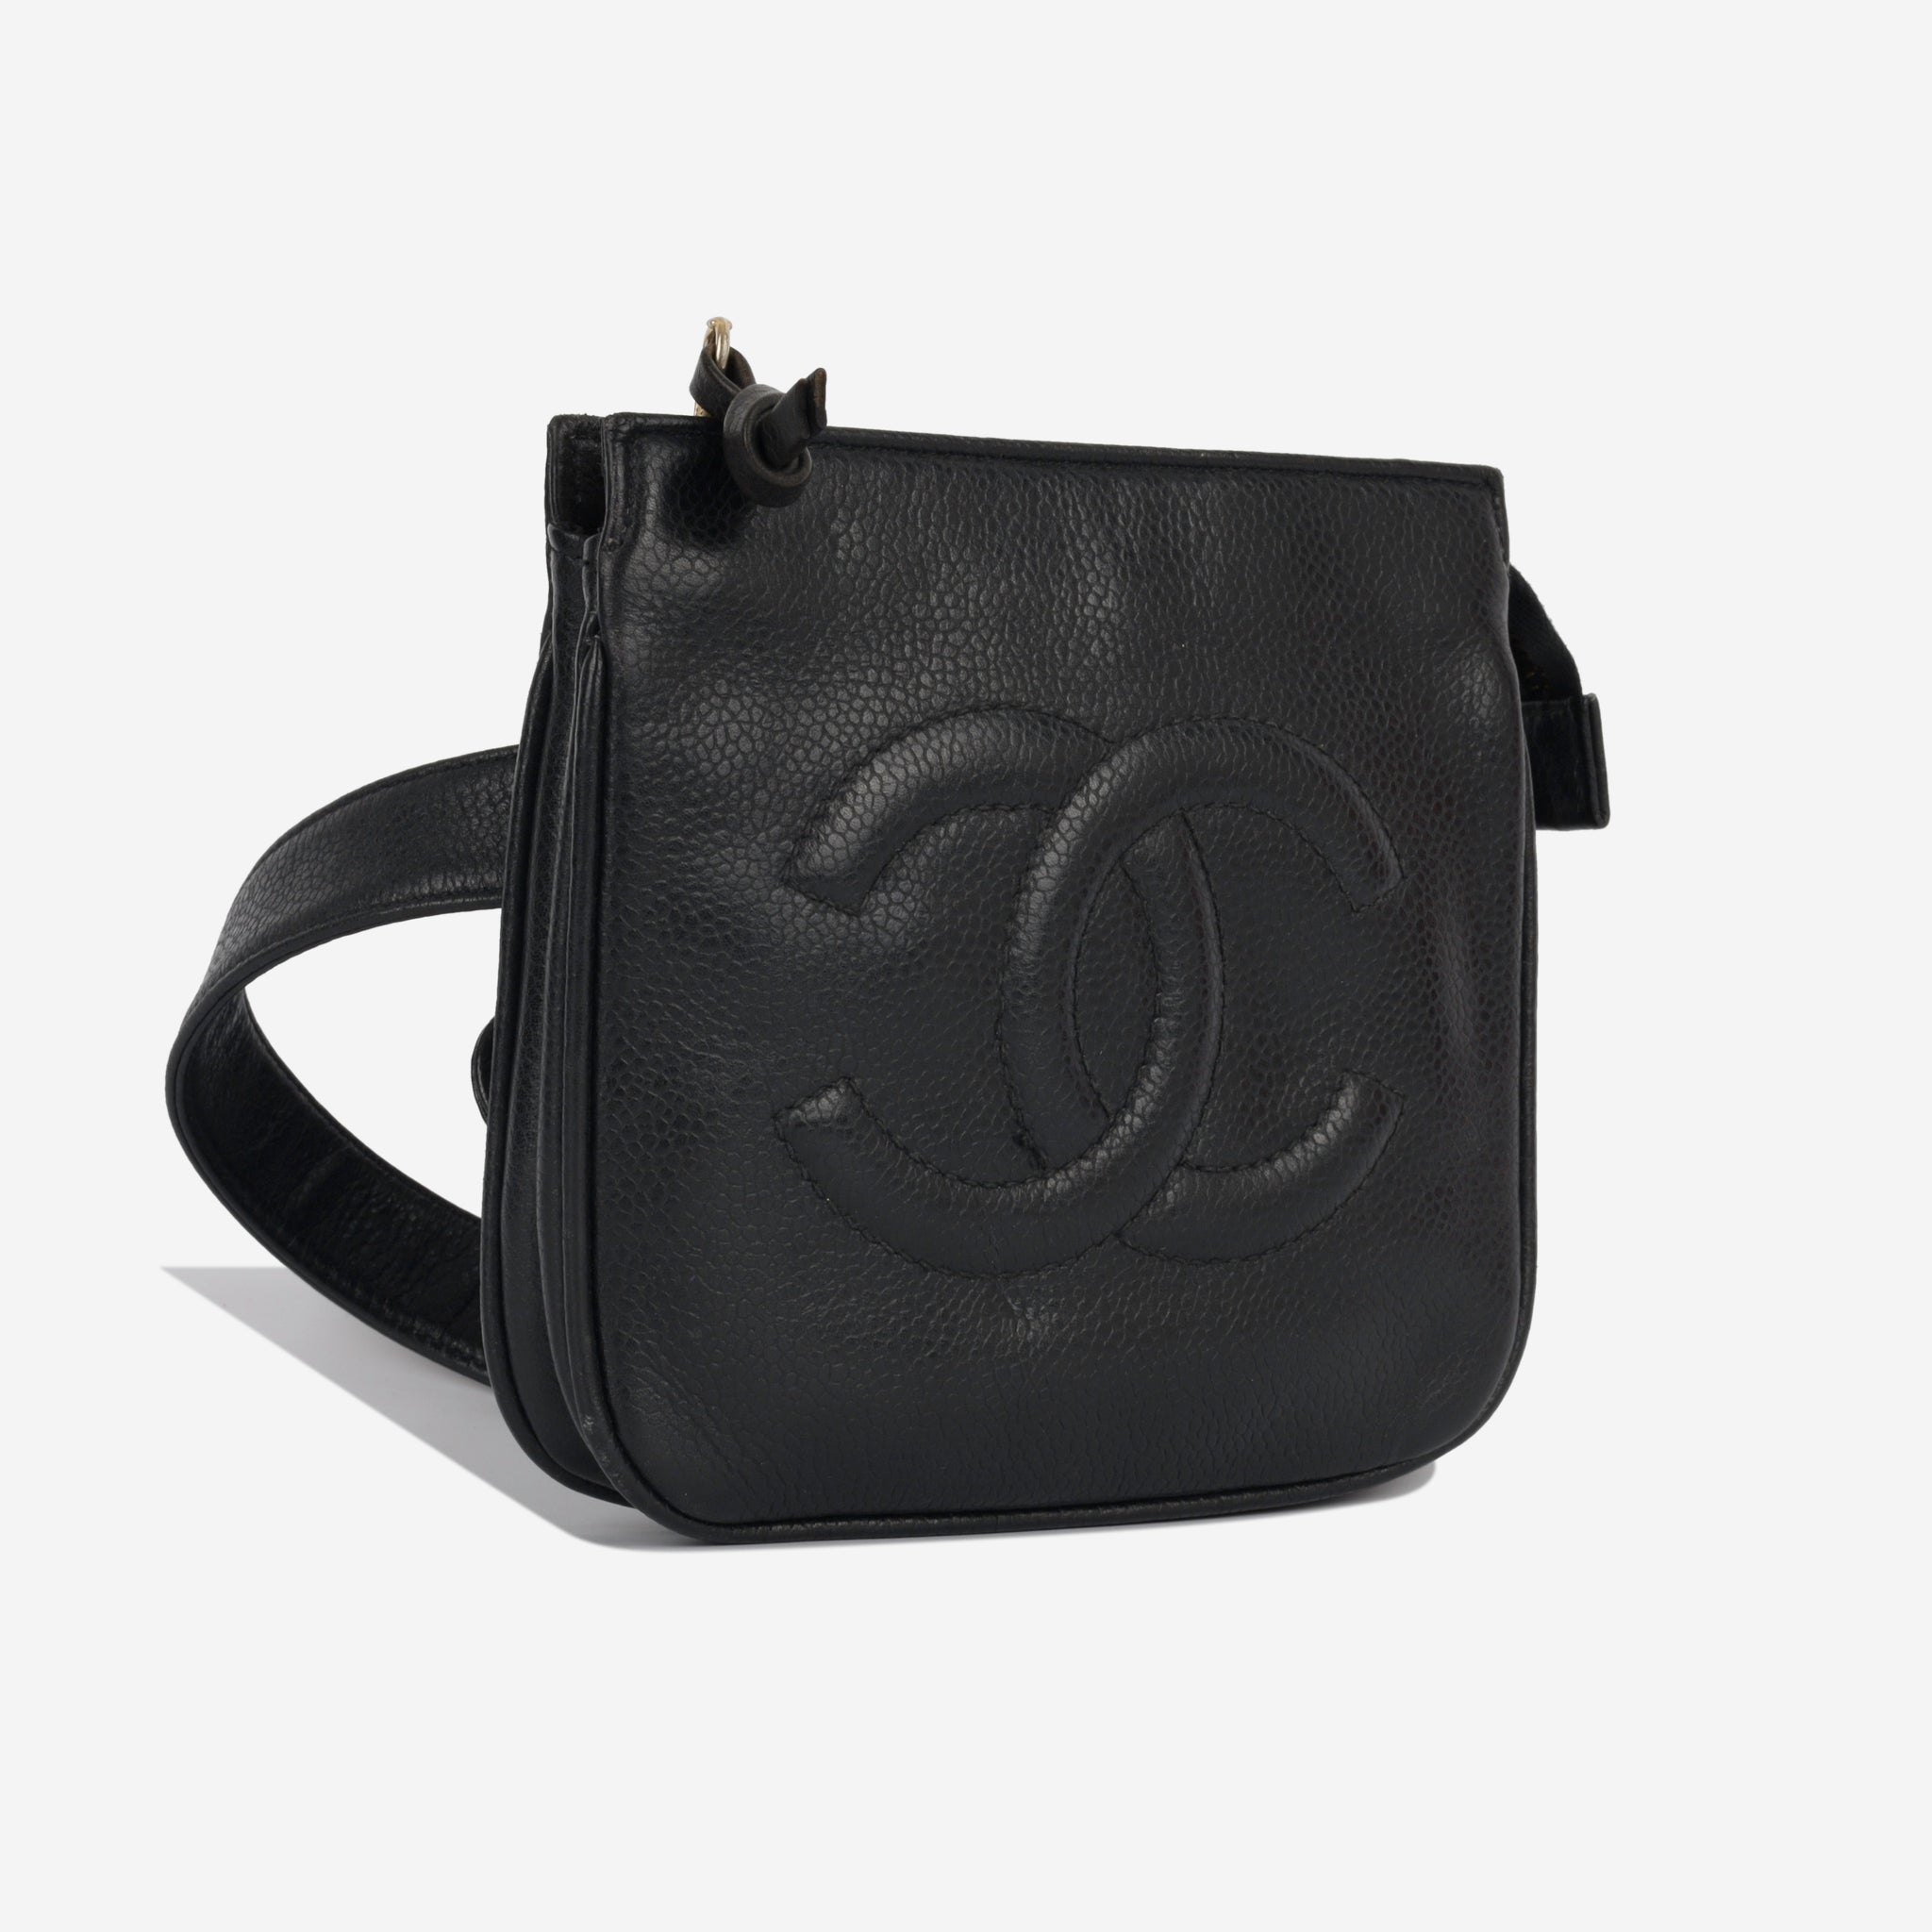 Chanel - Vintage Belt Bag - Pre-Loved - Black Caviar - GHW